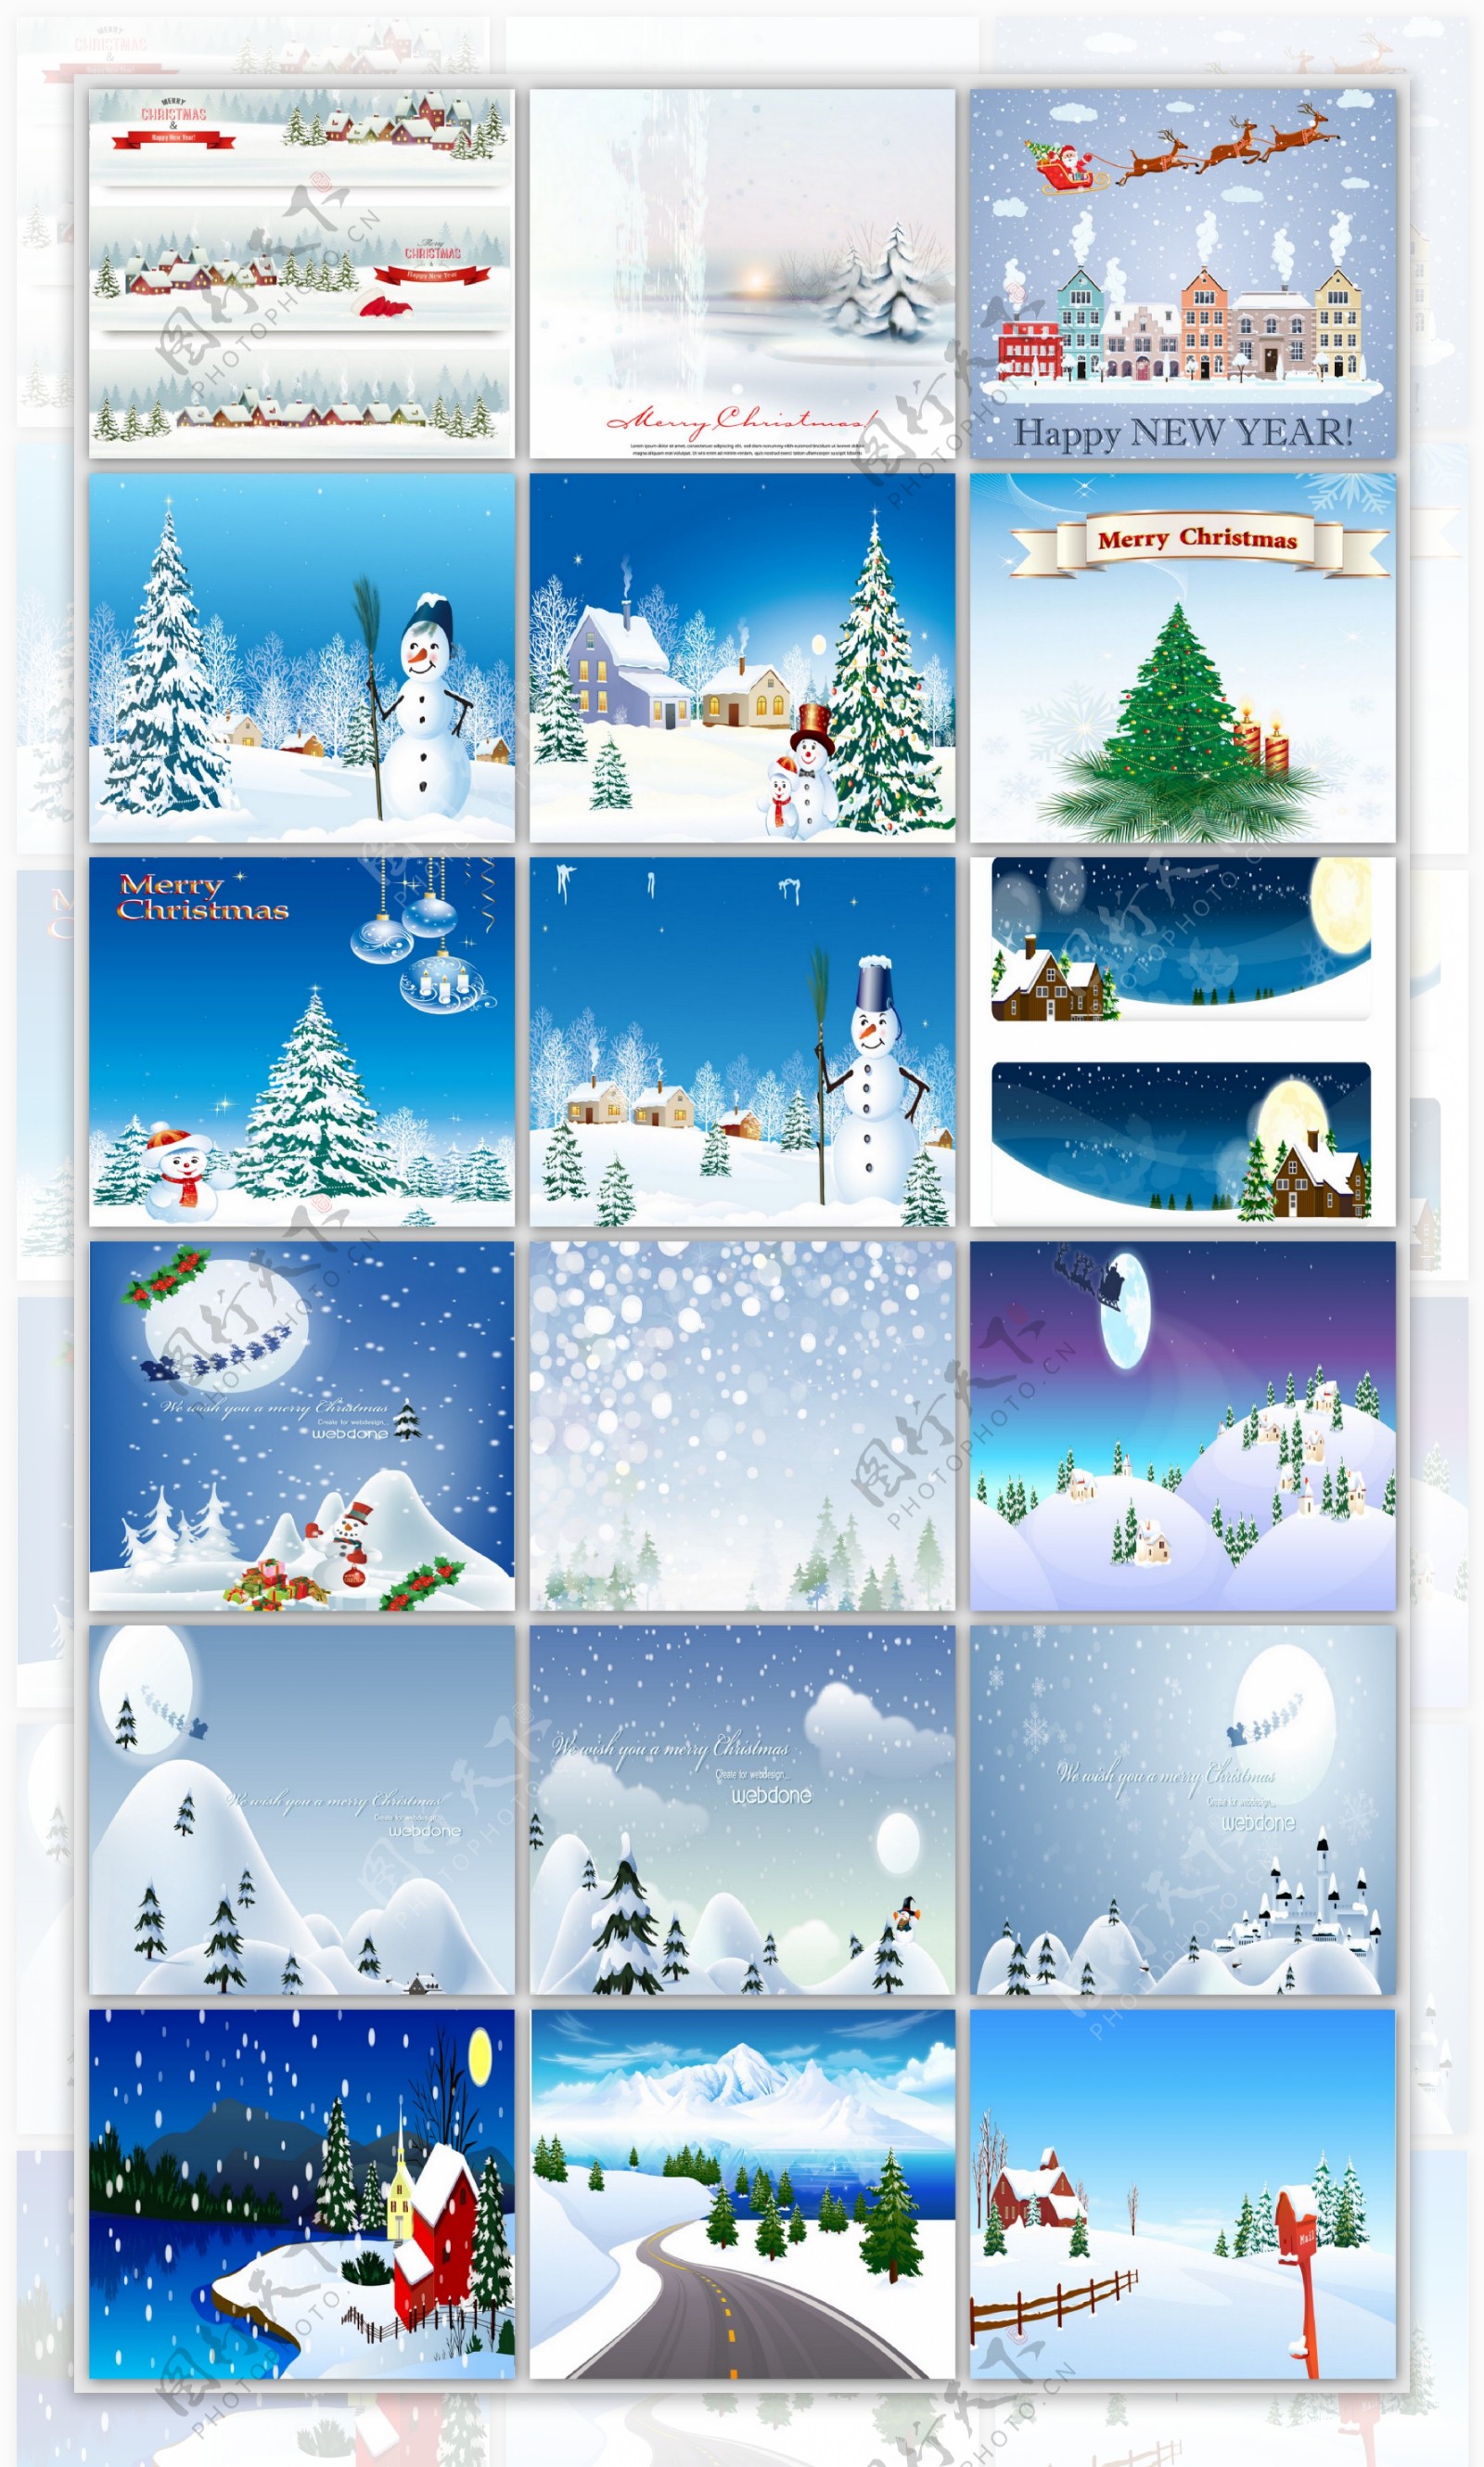 圣诞节圣诞节雪景设计素材